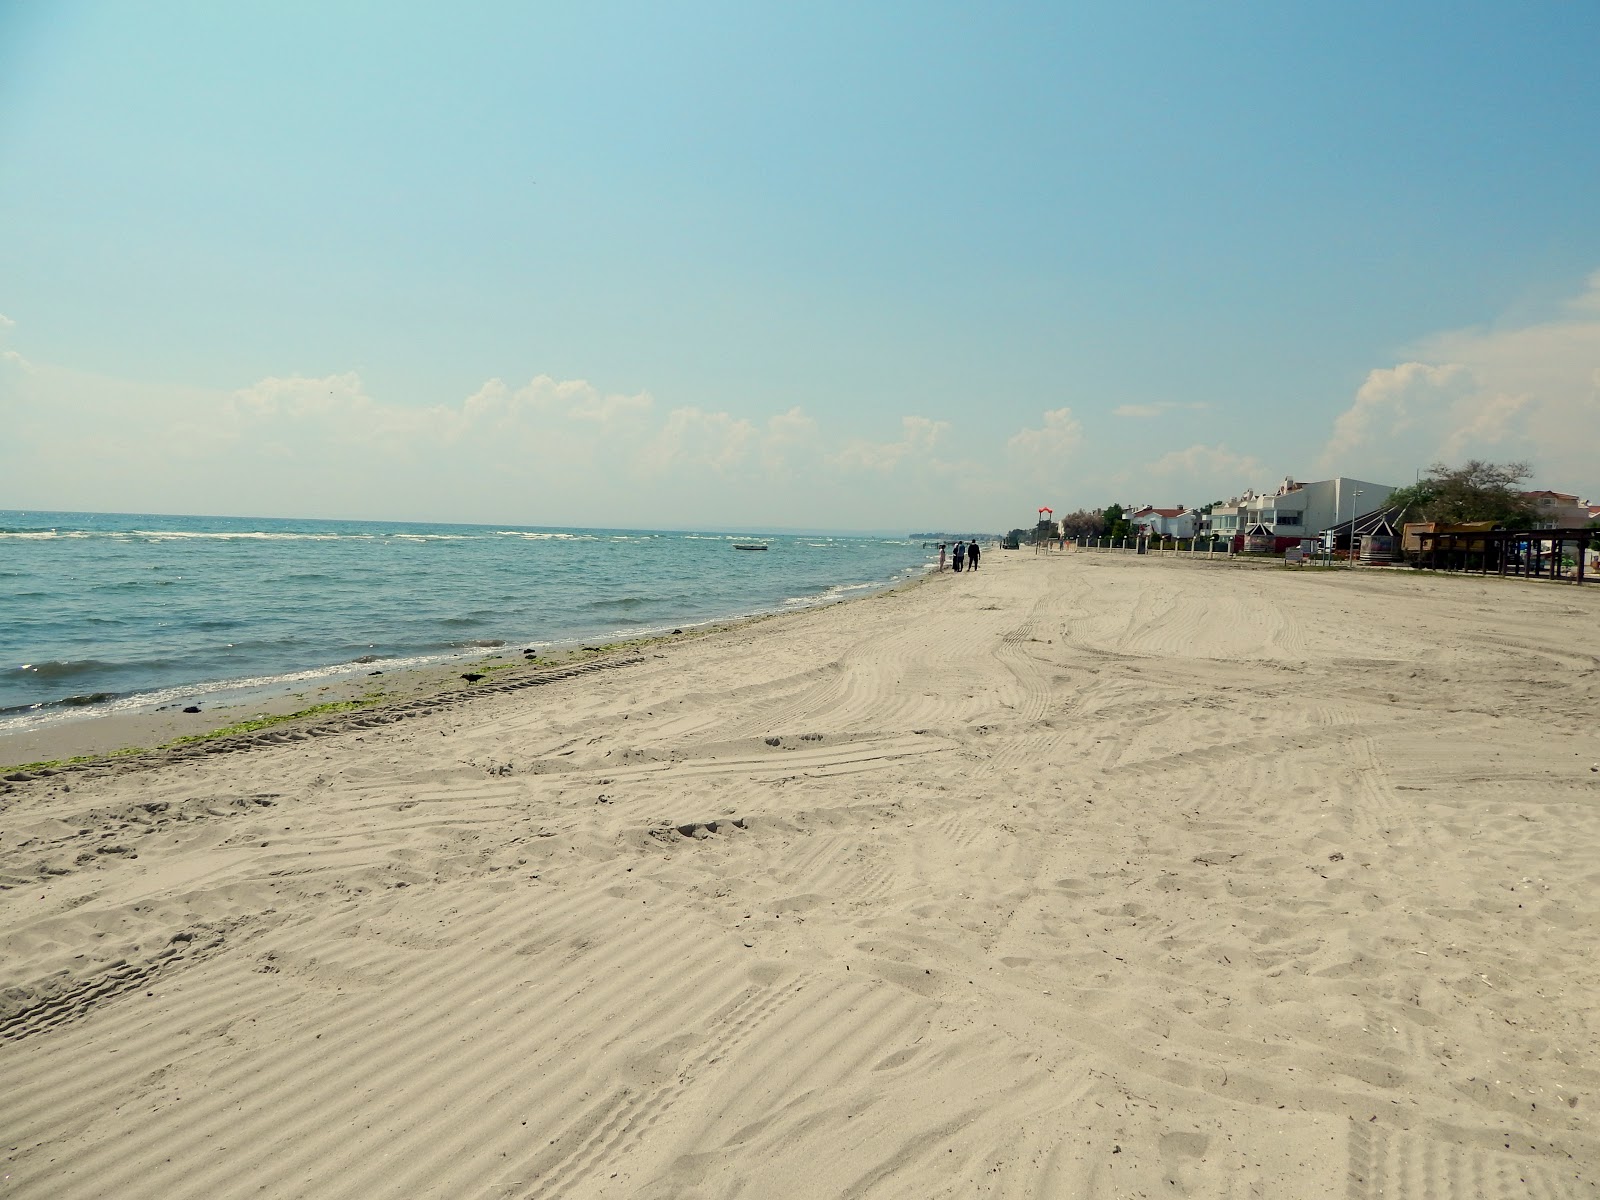 Foto de Ataturk Parki beach área de resort de praia